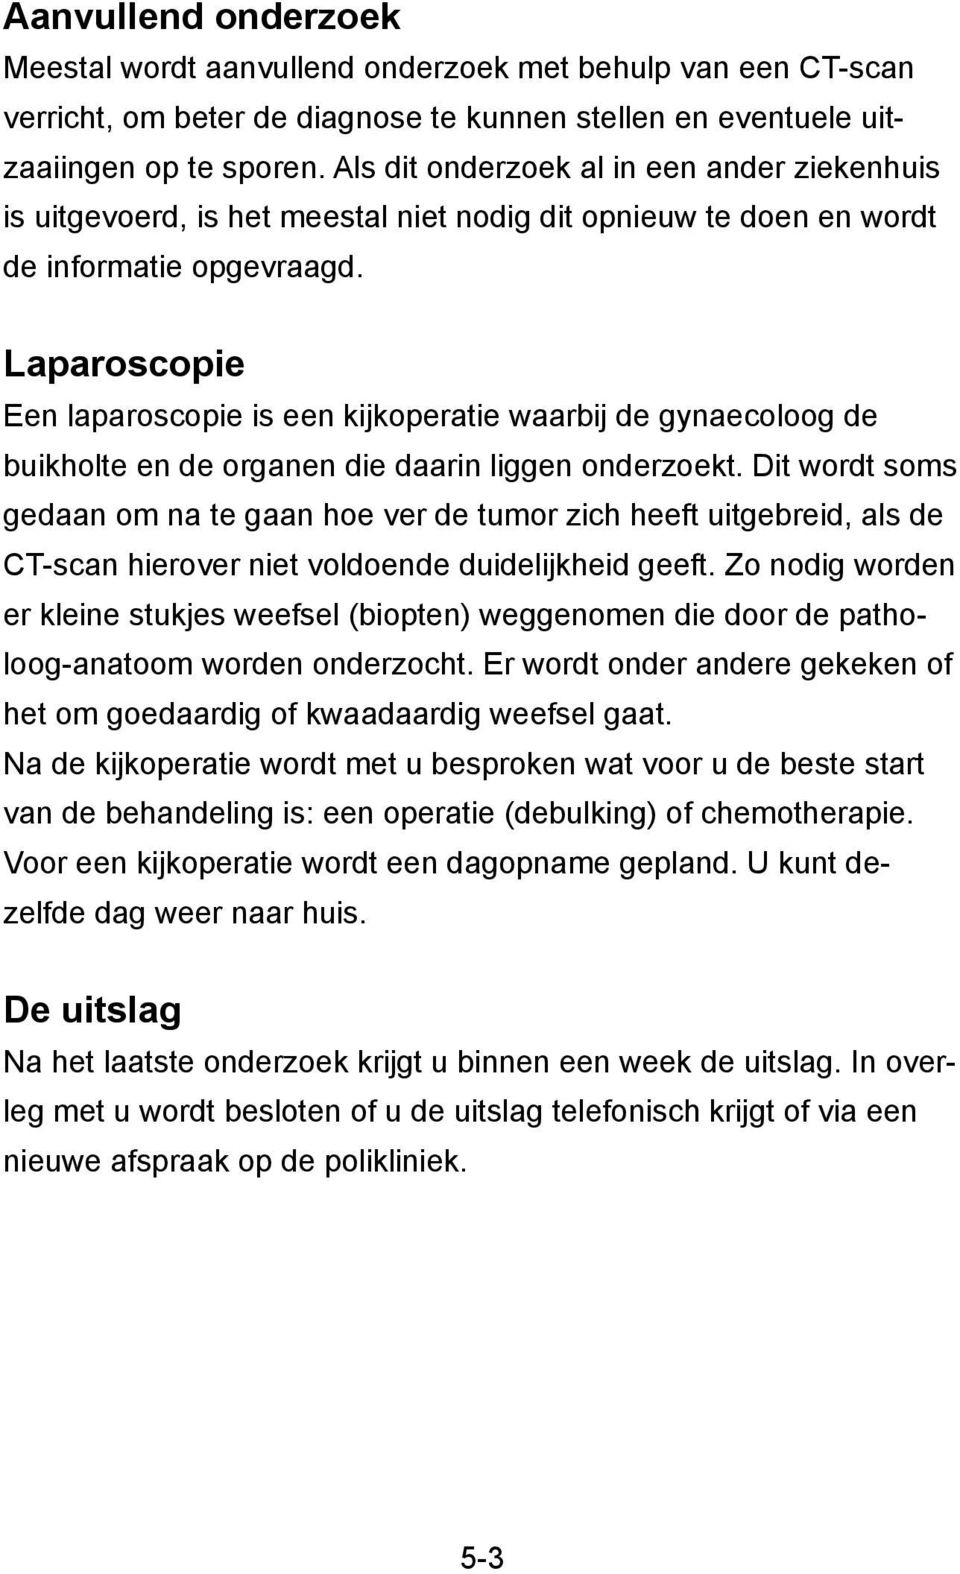 Laparoscopie Een laparoscopie is een kijkoperatie waarbij de gynaecoloog de buikholte en de organen die daarin liggen onderzoekt.